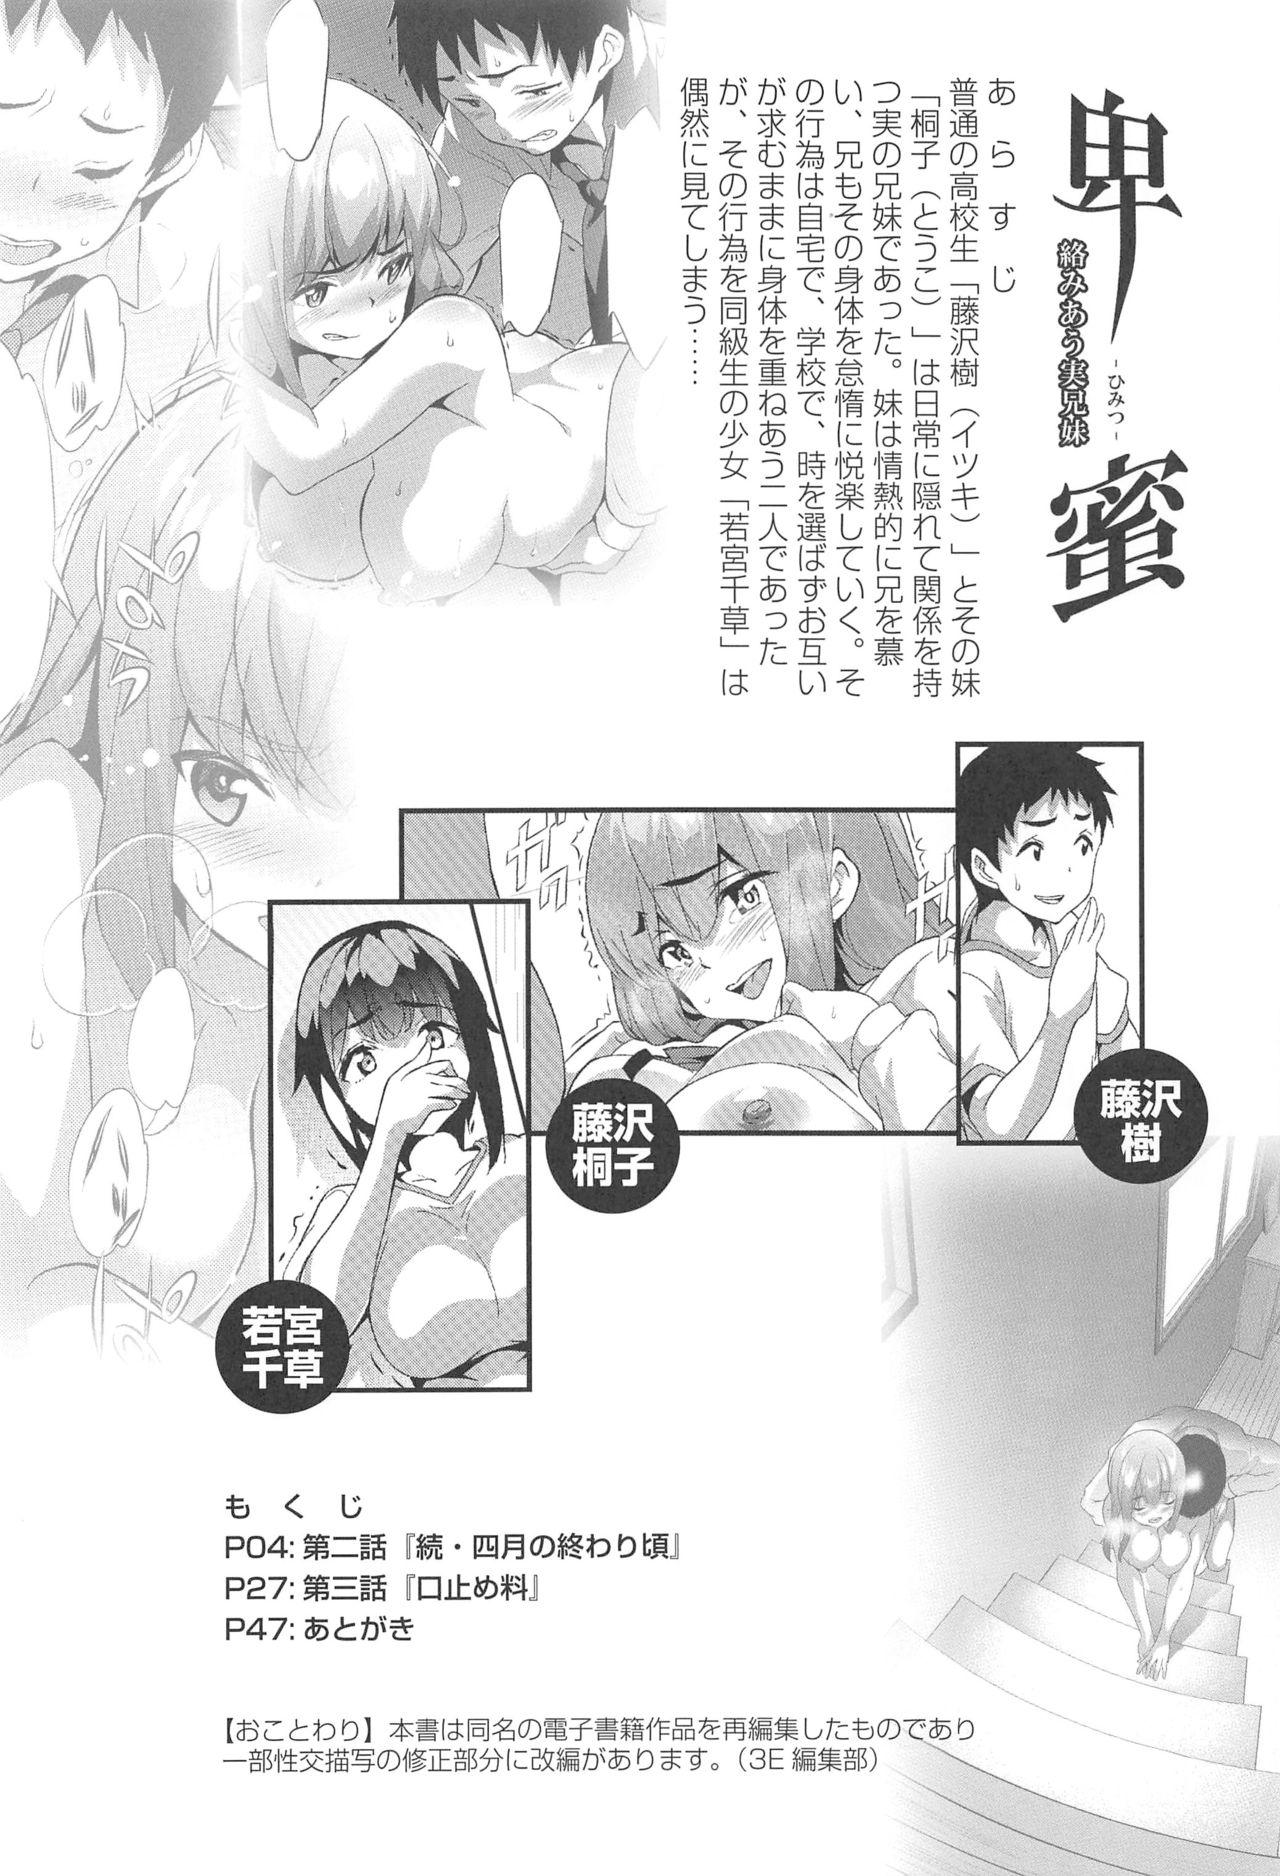 Oral Himitsu 2 & 3 "Zoku 4-gatsu no Owarigoro" "Kuchidomeryou" - Original Deep - Page 3